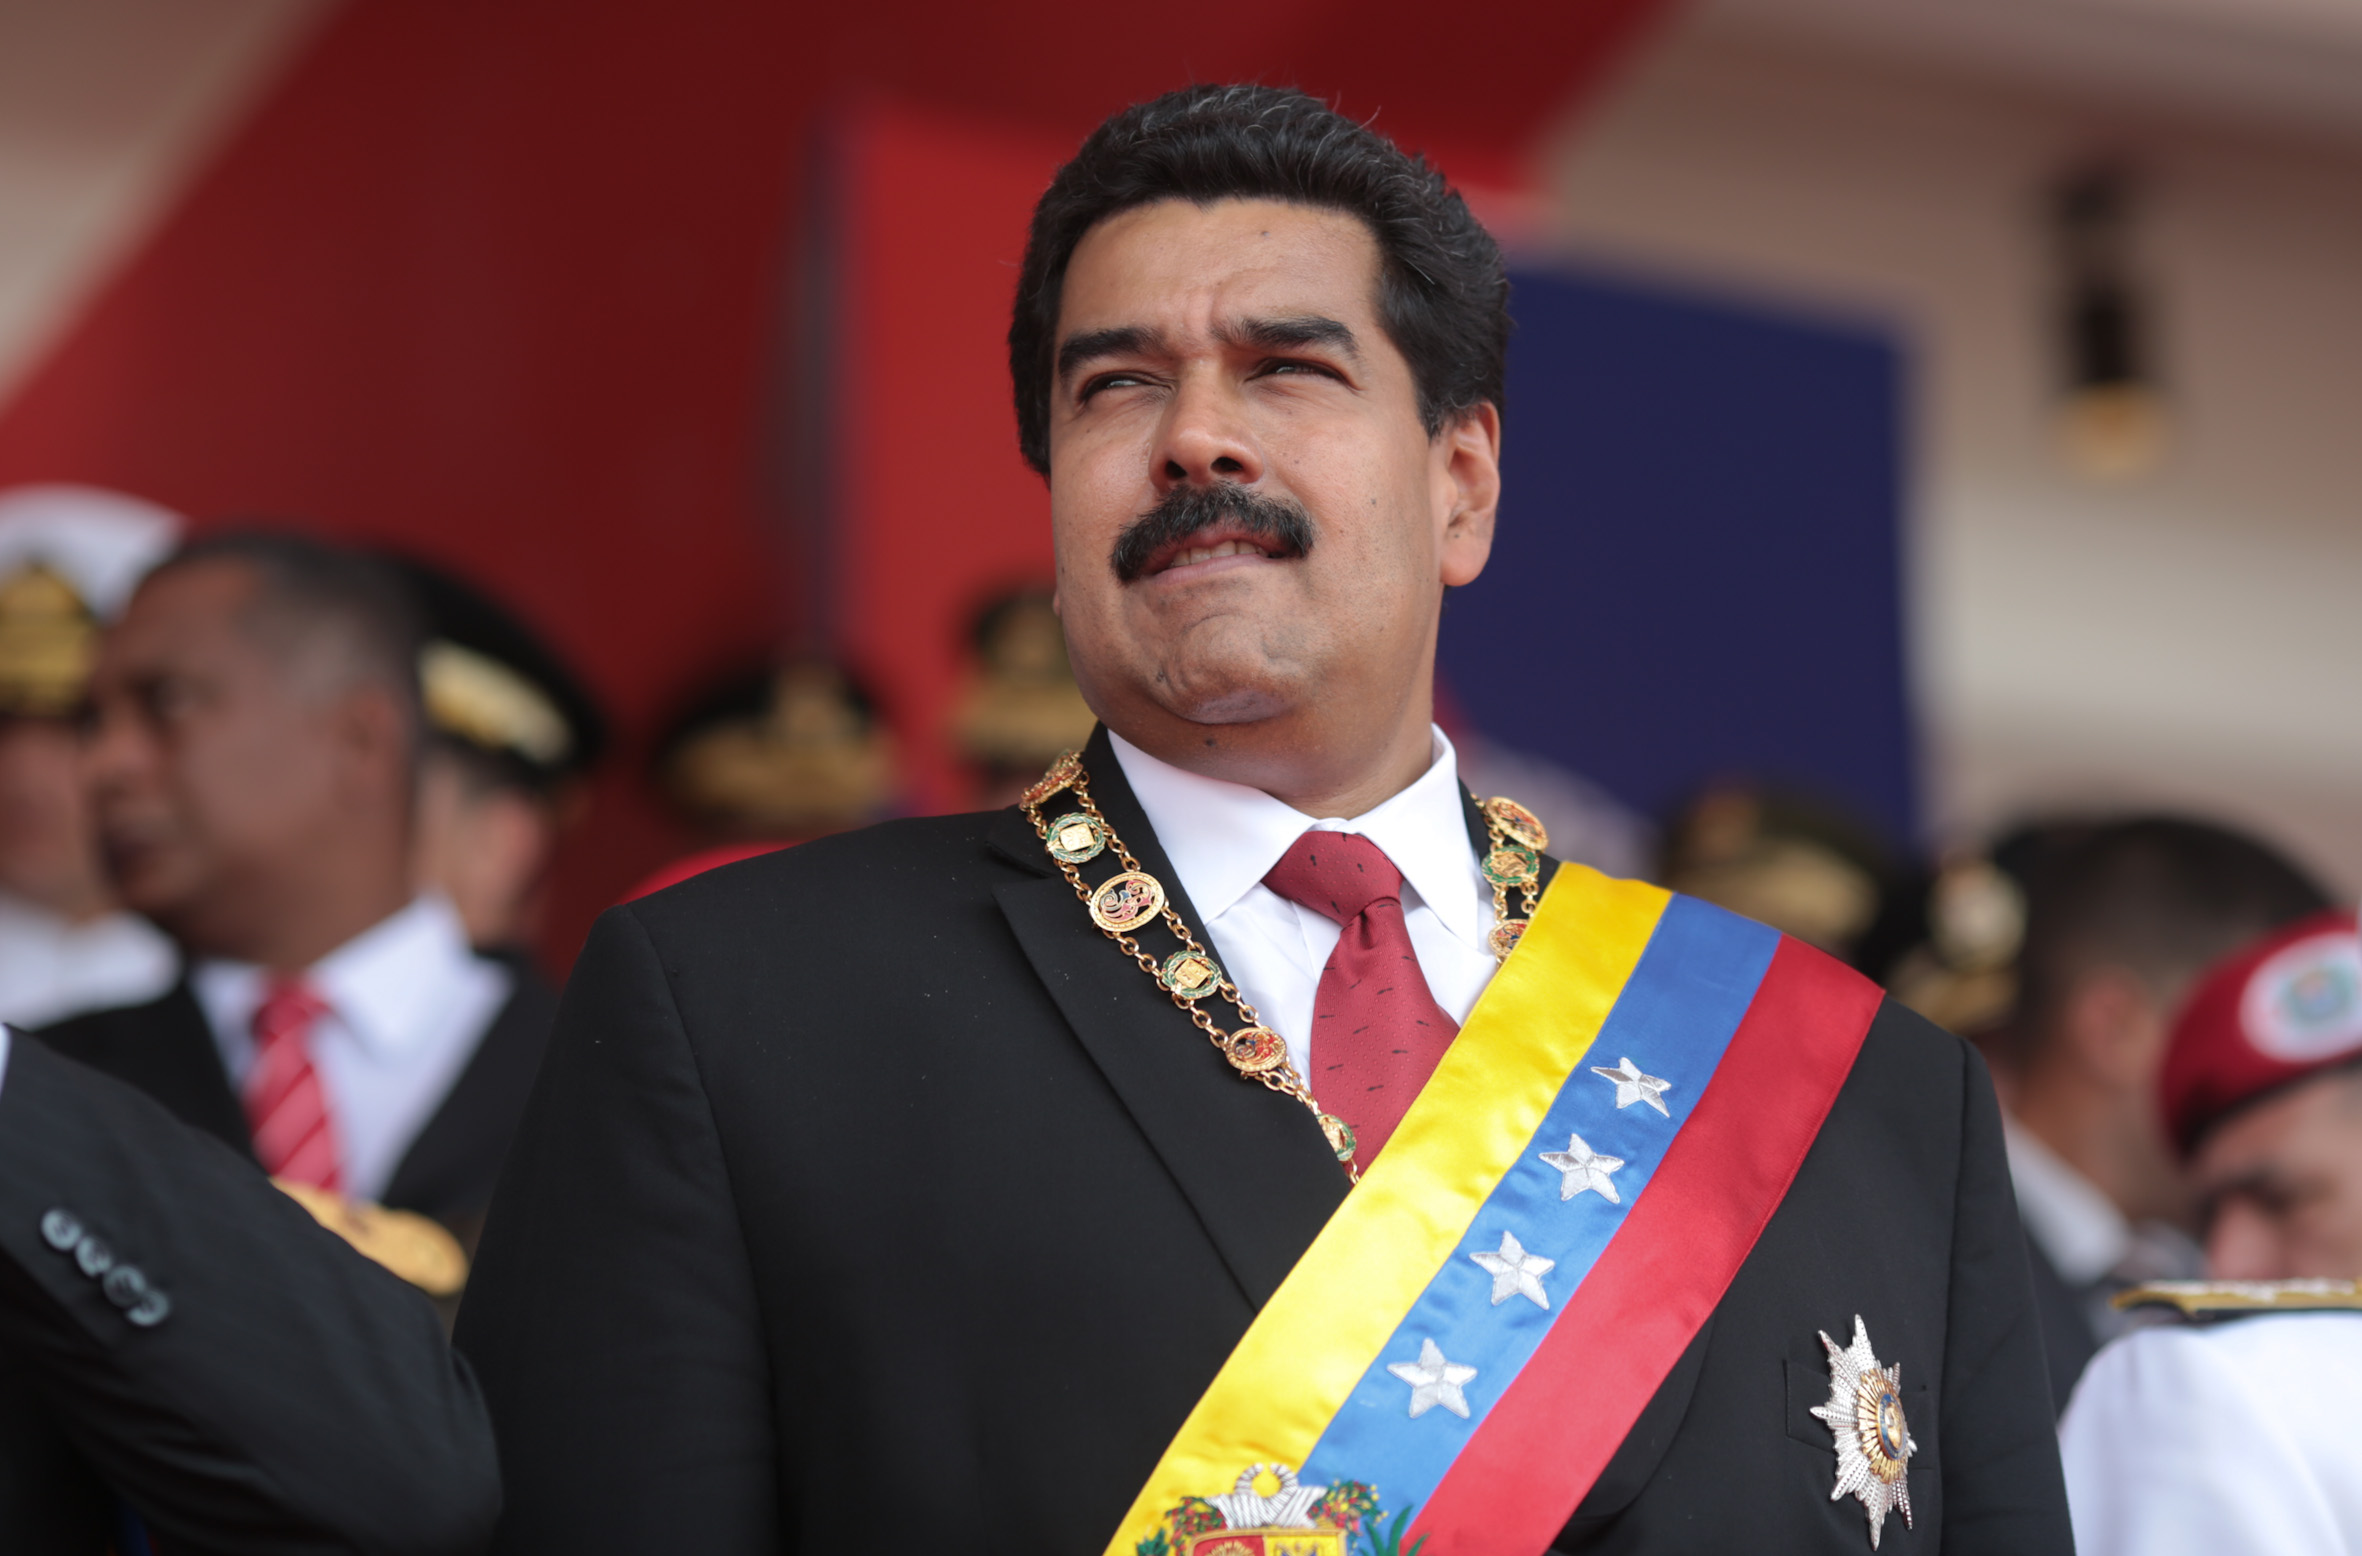 L'attuale presidente del Venezuela Nicolas Maduro